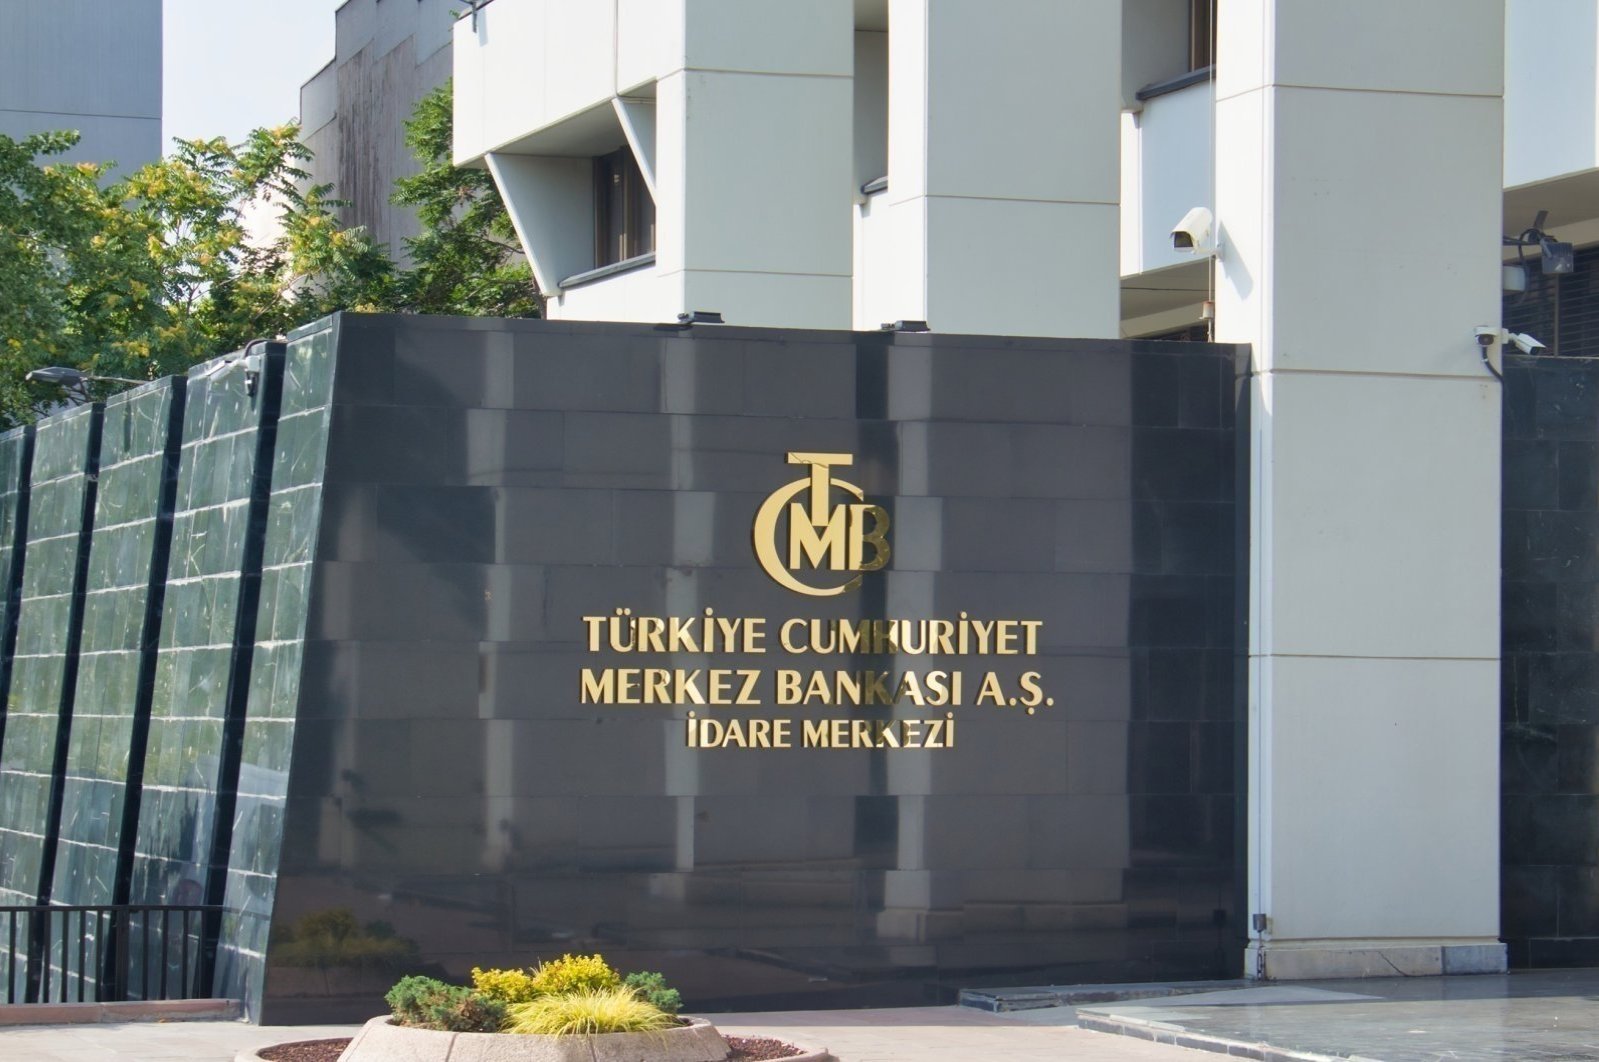 Bank sentral Turki memangkas suku bunga menjadi 8,5%, memantau dampak ekonomi gempa